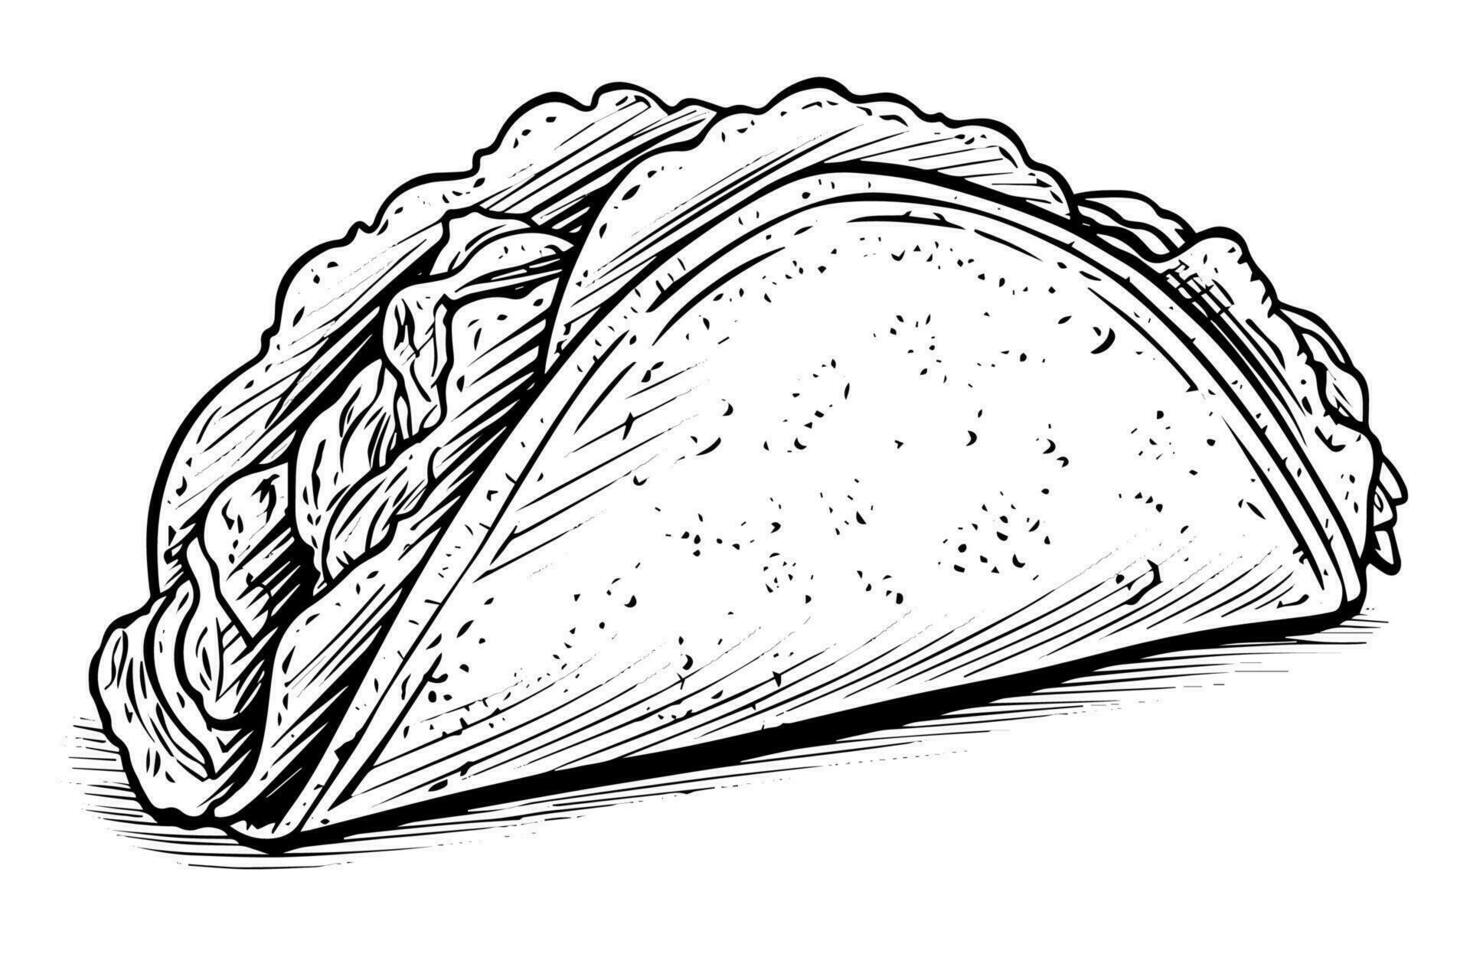 main tiré encre esquisser de tacos. traditionnel mexicain vite nourriture illustration. vecteur dessin.